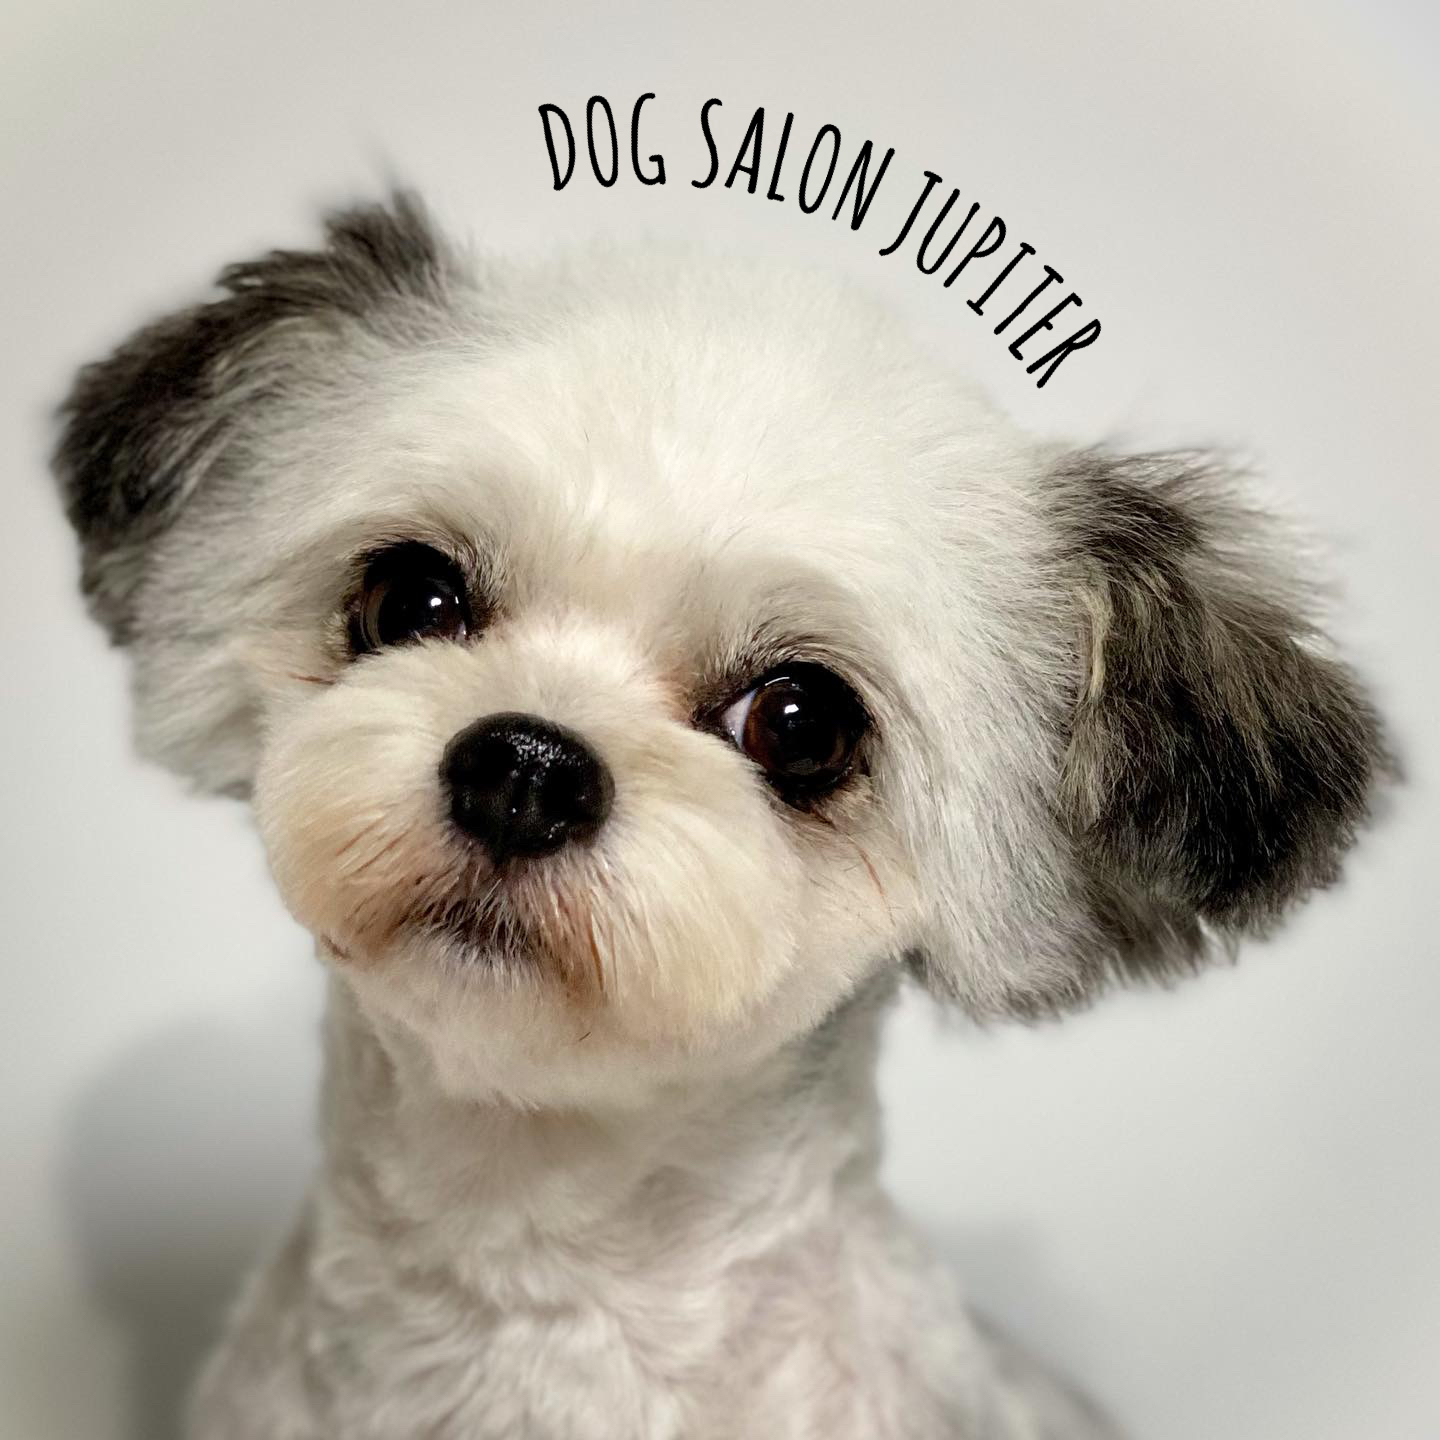 横浜市泉区のトリミングサロン Dog Salon Jupiter ミックス犬のトリミング